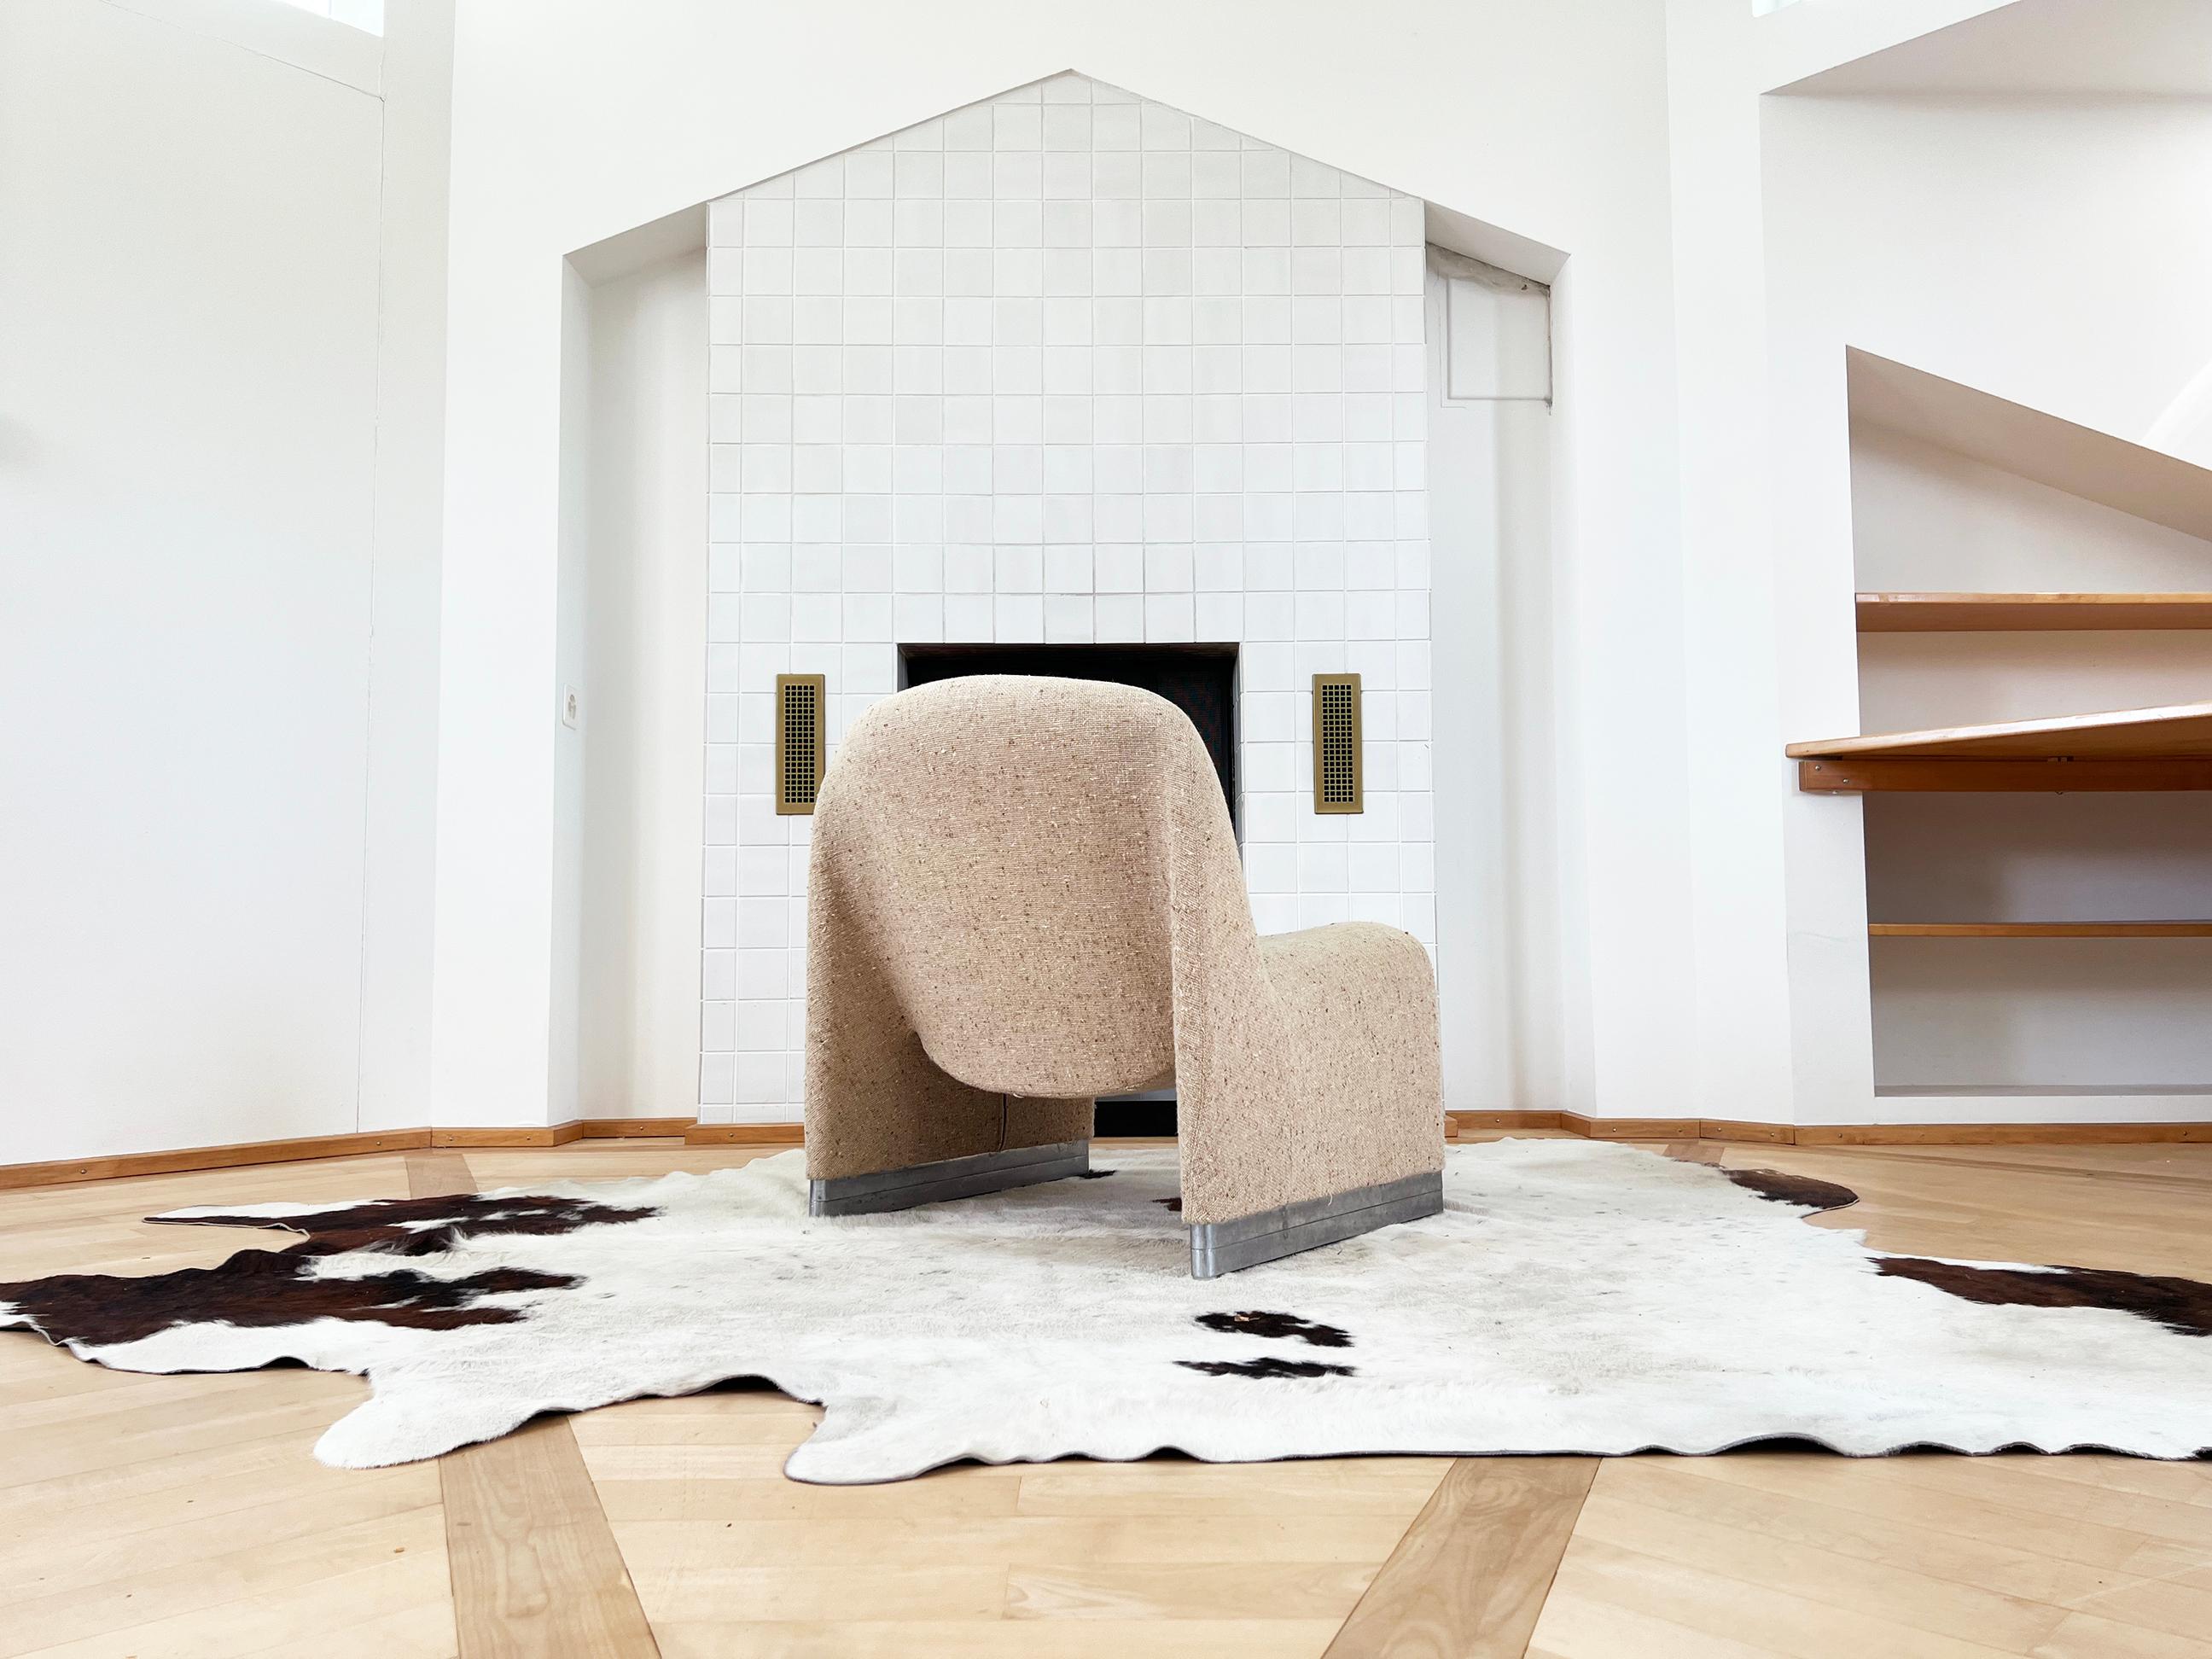 Ein schöner Alky-Stuhl in einem perfekten neutralen beige-hafermehlfarbenen Wollgewebe von Giancarlo Piretti für Anonima Castelli, Italien 1960er Jahre.

Abmessungen:
Höhe: 27,5 Zoll (69,85 cm)
Breite: 26 Zoll (66,04 cm)
Tiefe: 31 Zoll (78,74